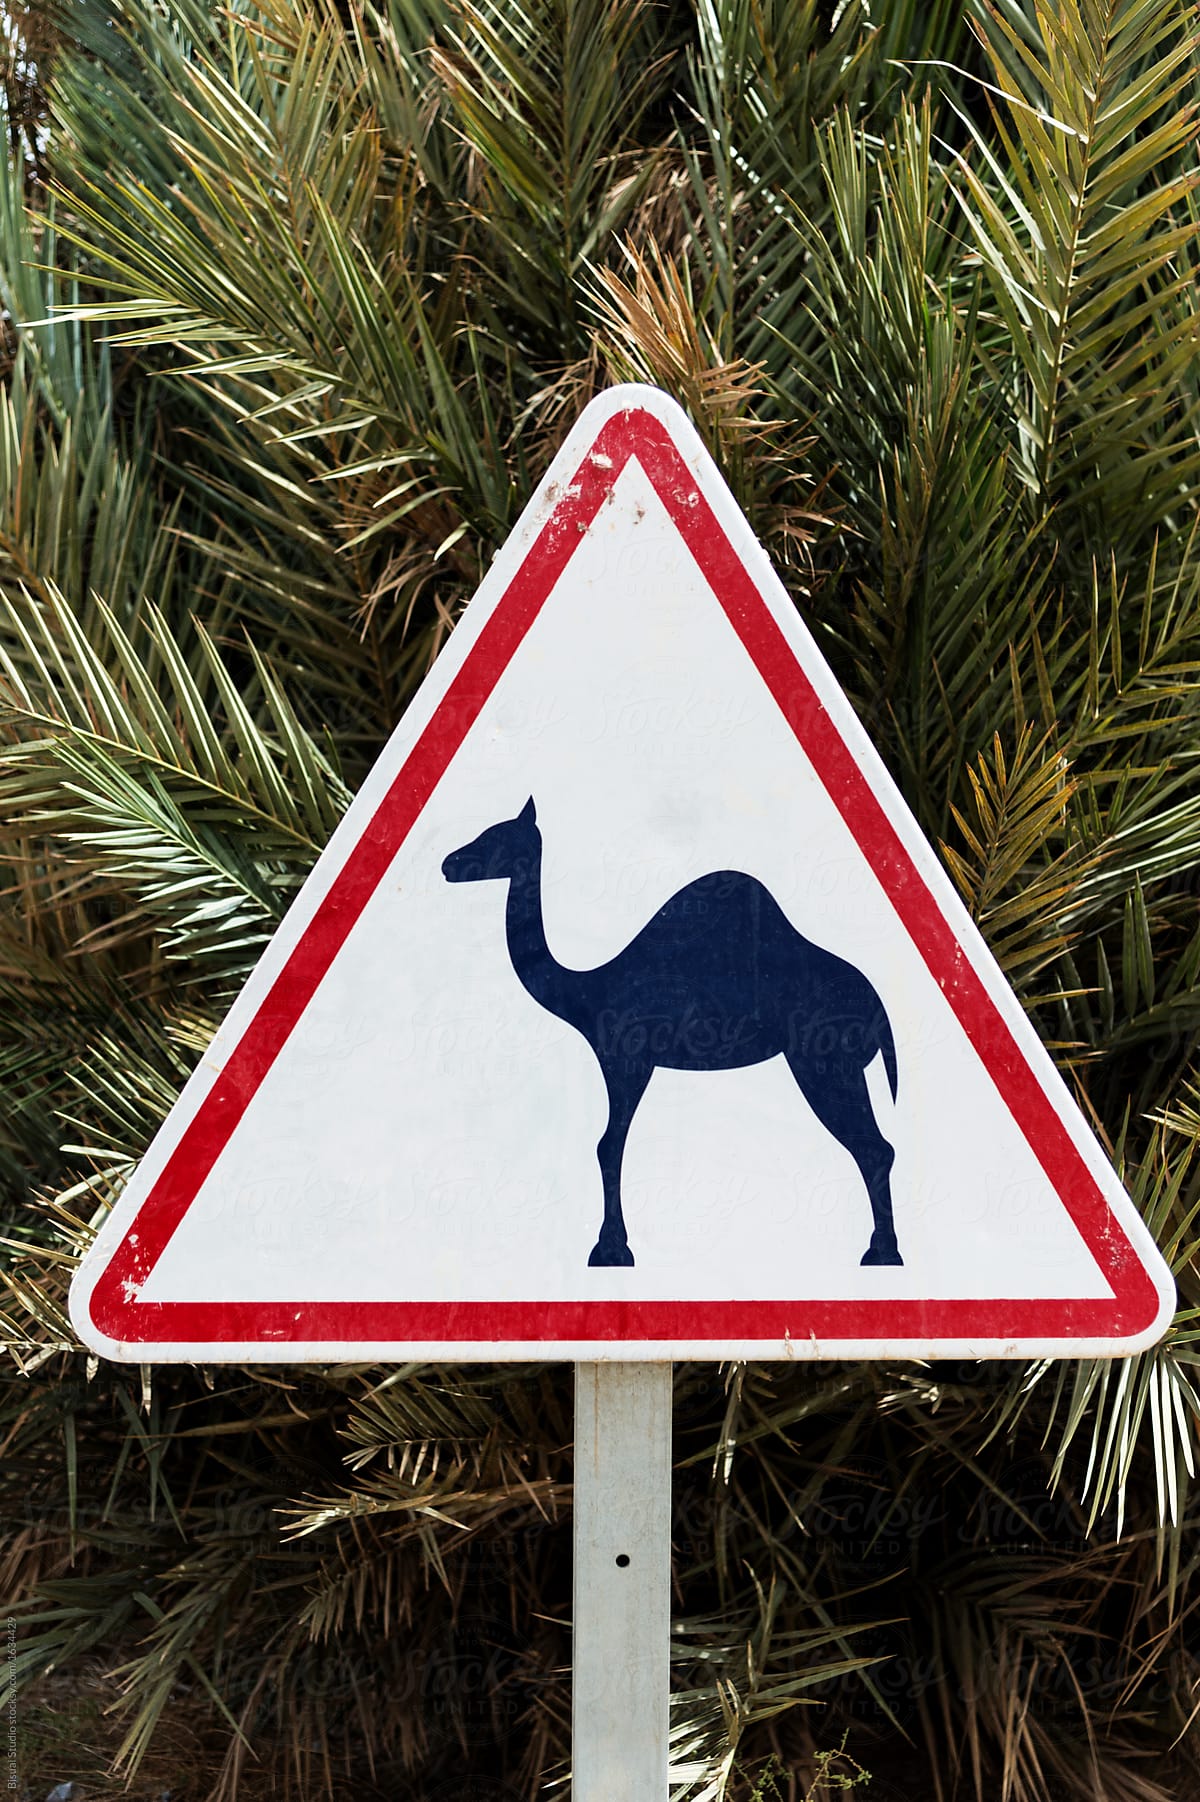 Danger! Camel on the road